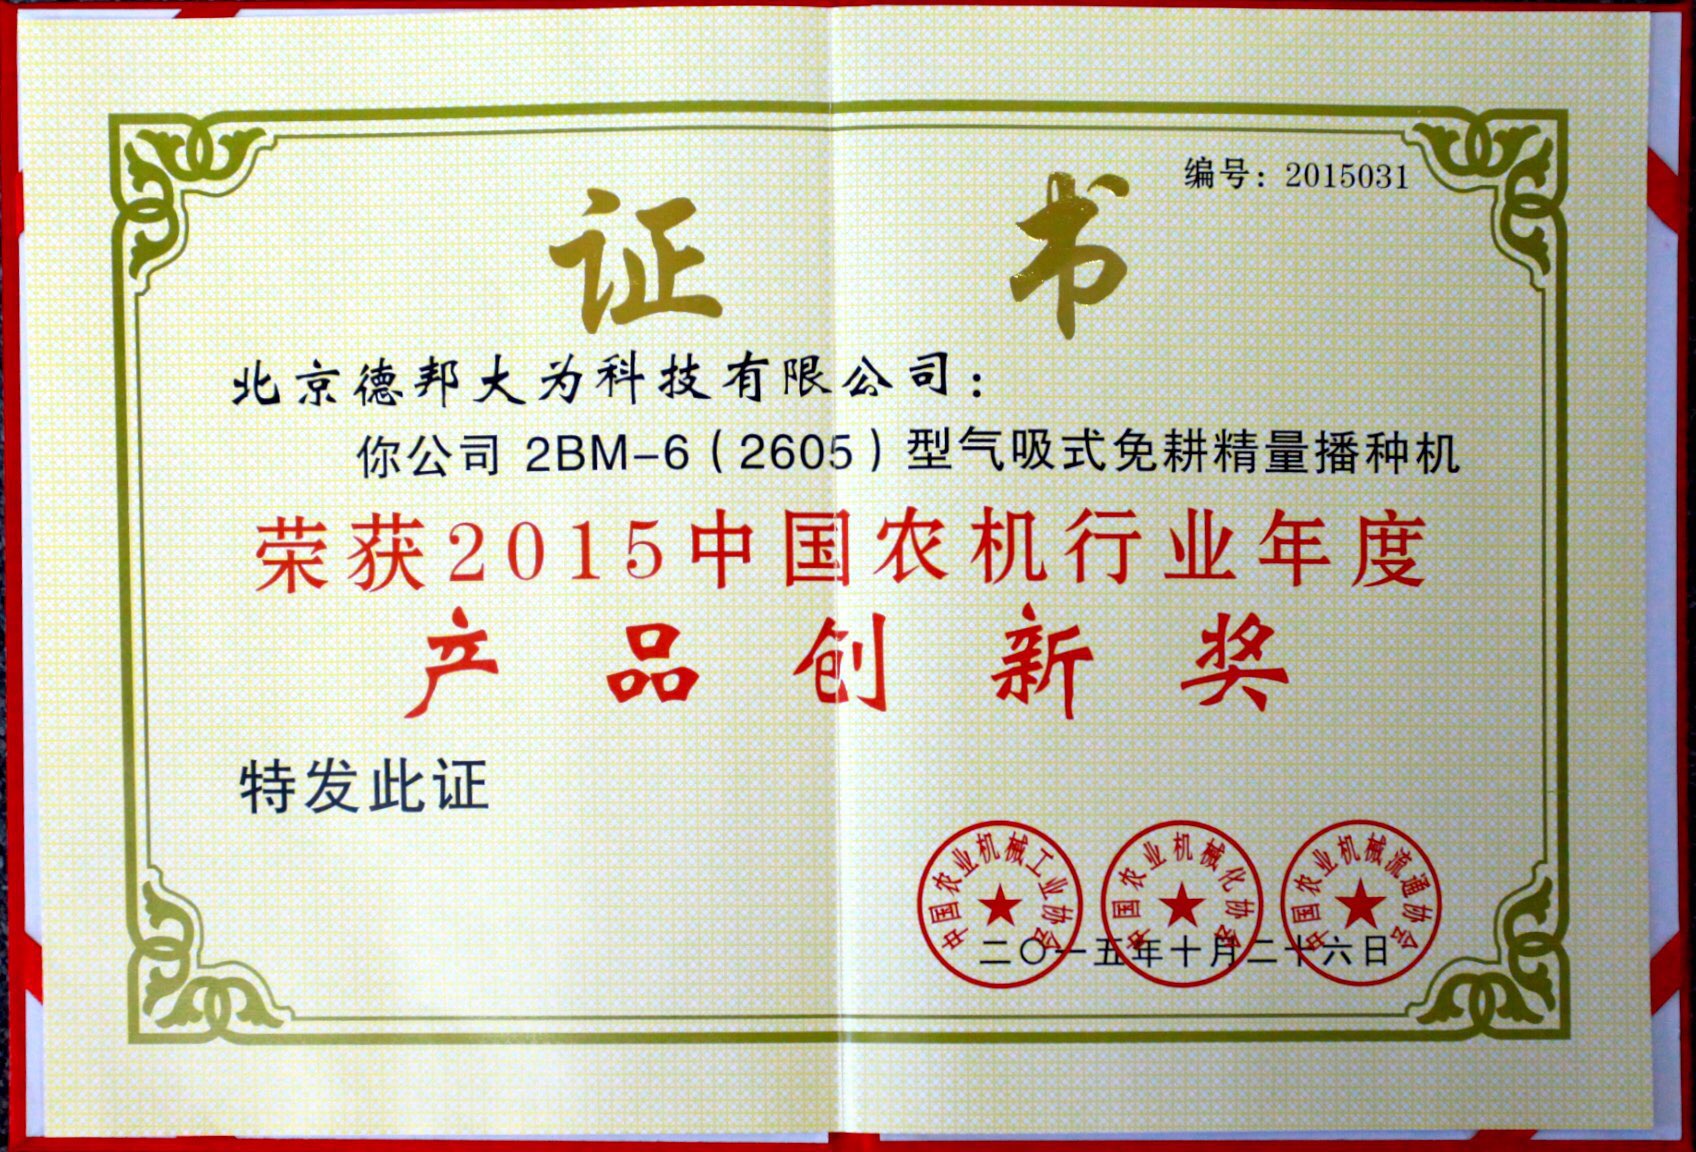 2015年度产品创新奖